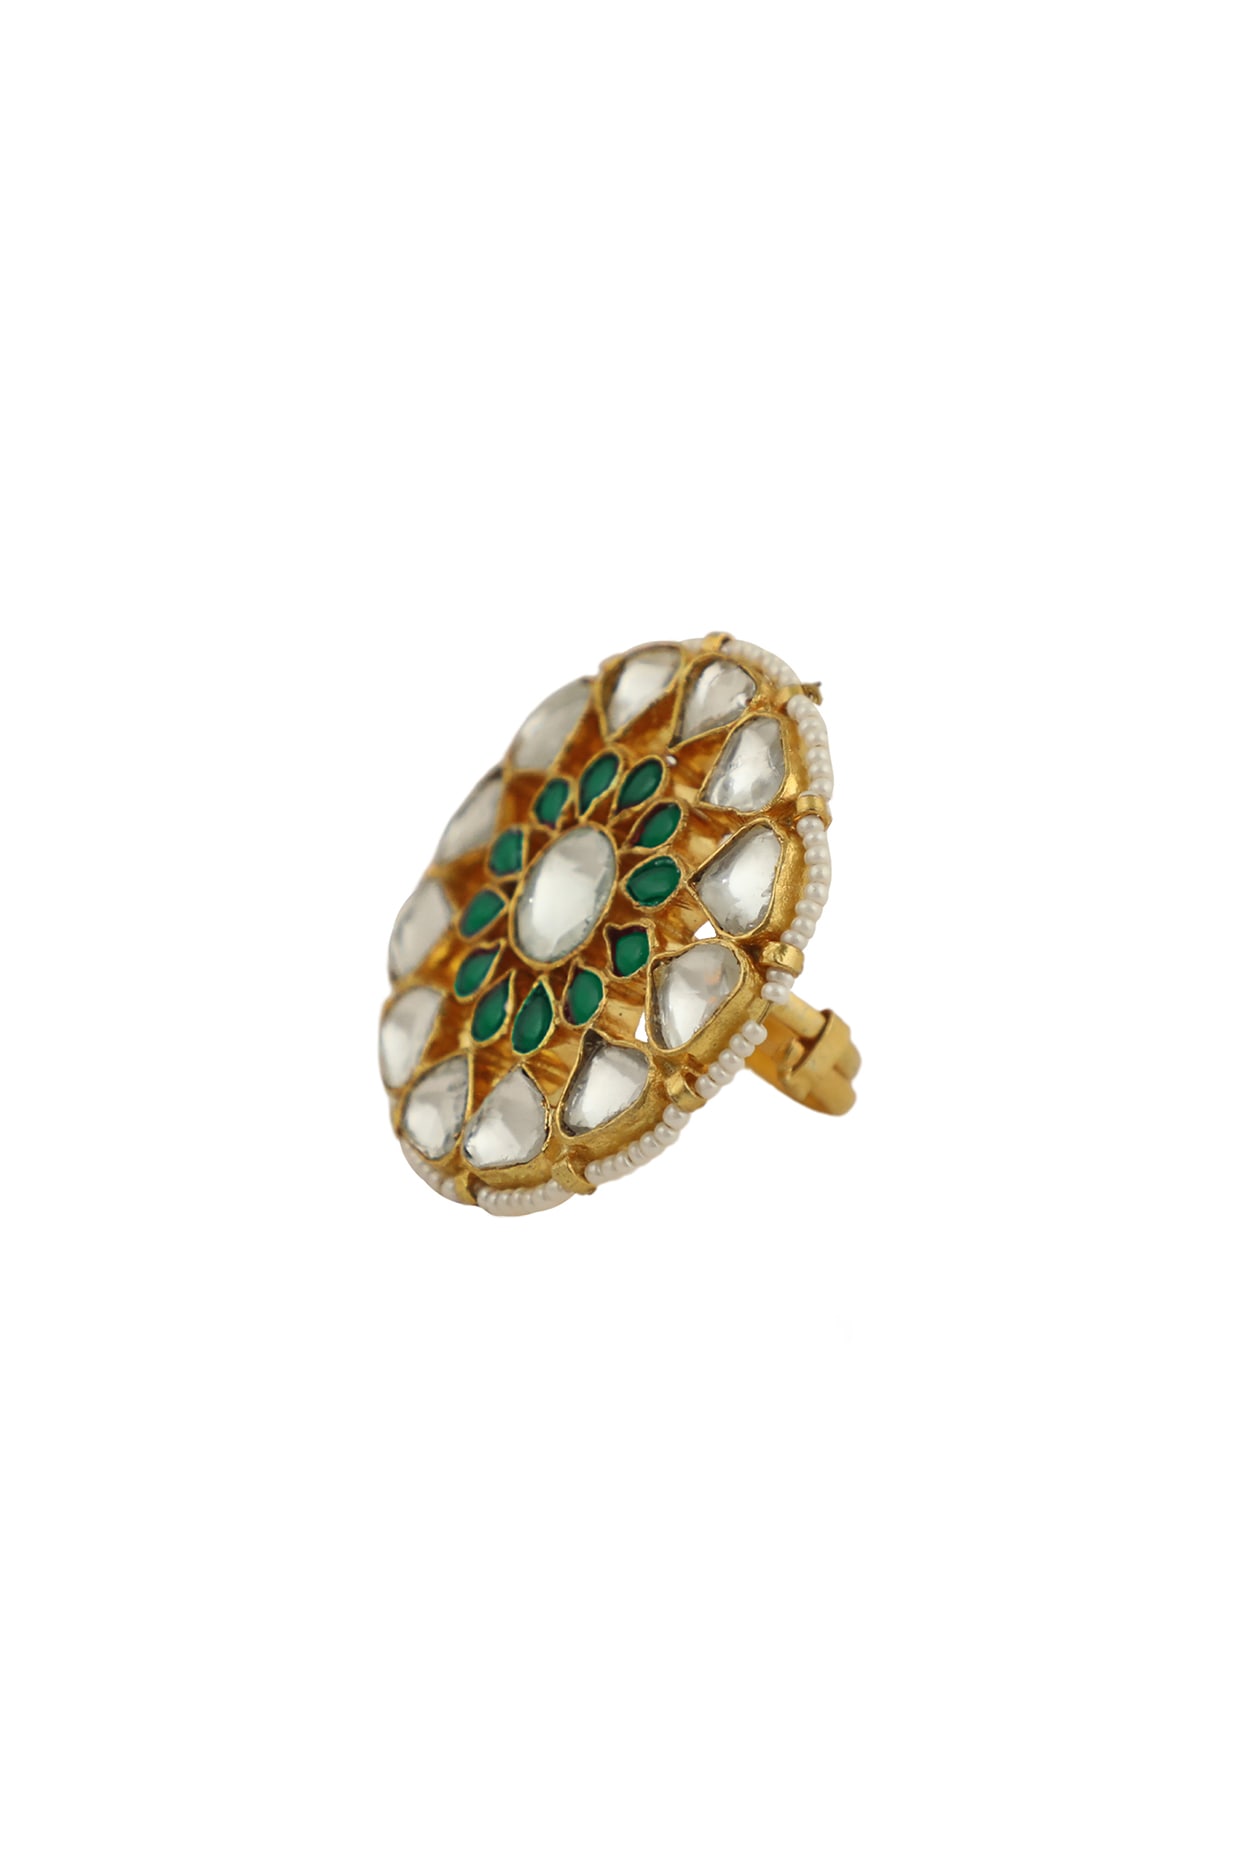 Buy Green Gemstone Ring Designs Online In Kalyan | Stone Ring